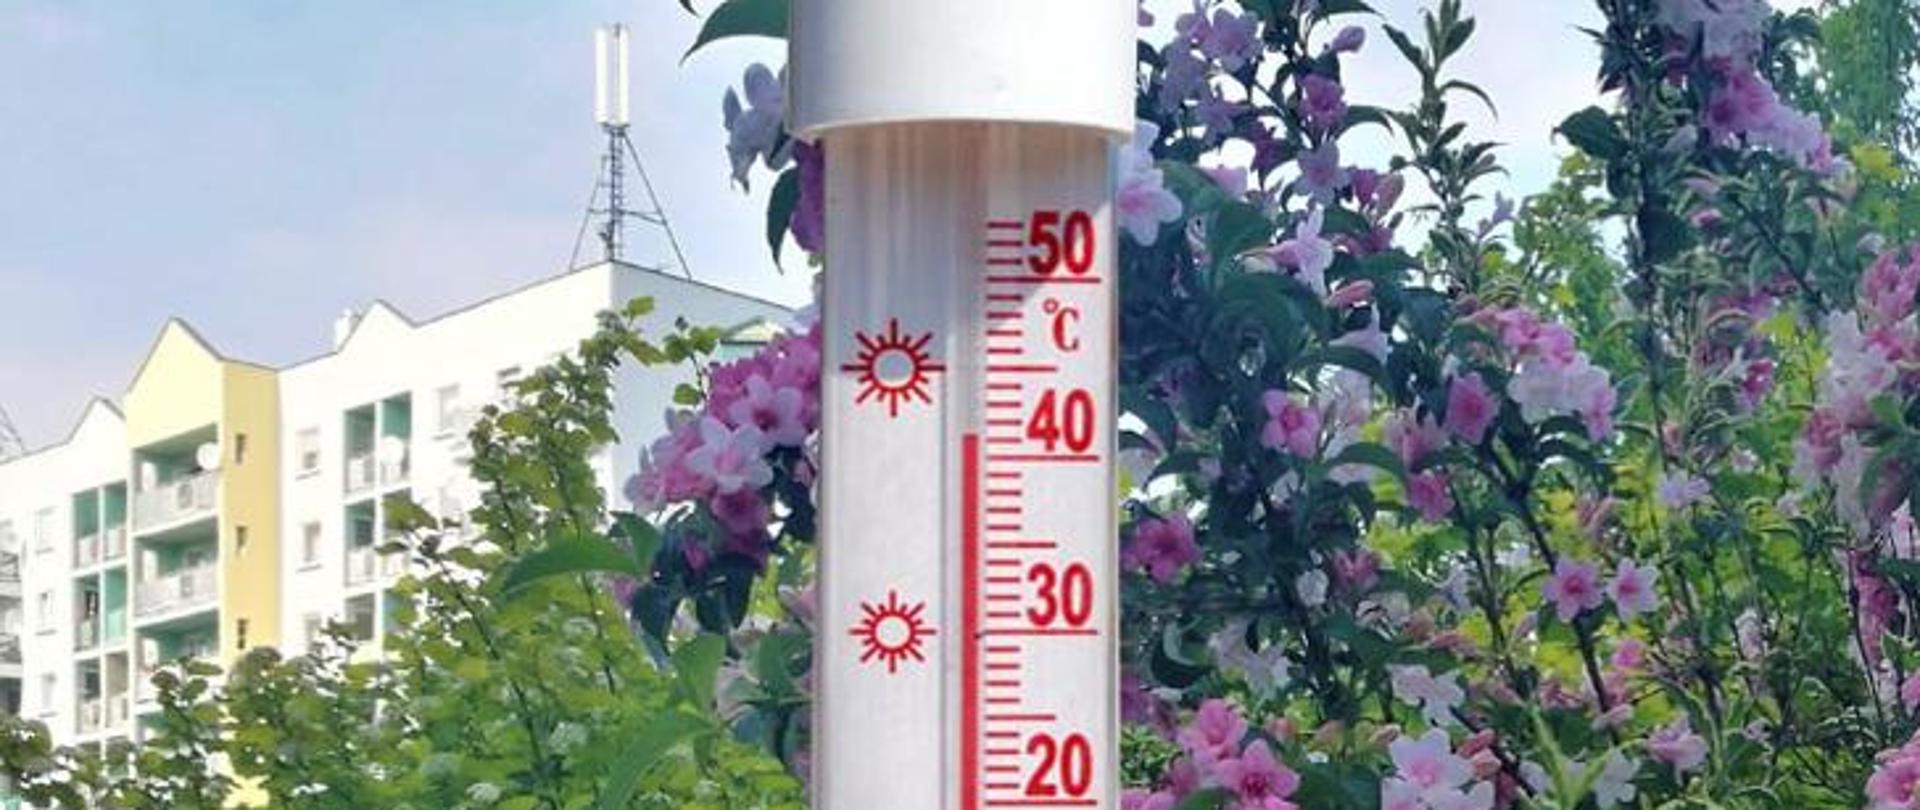 Zdjęcie pokazuje termometr temperatury powietrza i wskazuje ponad 40 stopni Celsiusza